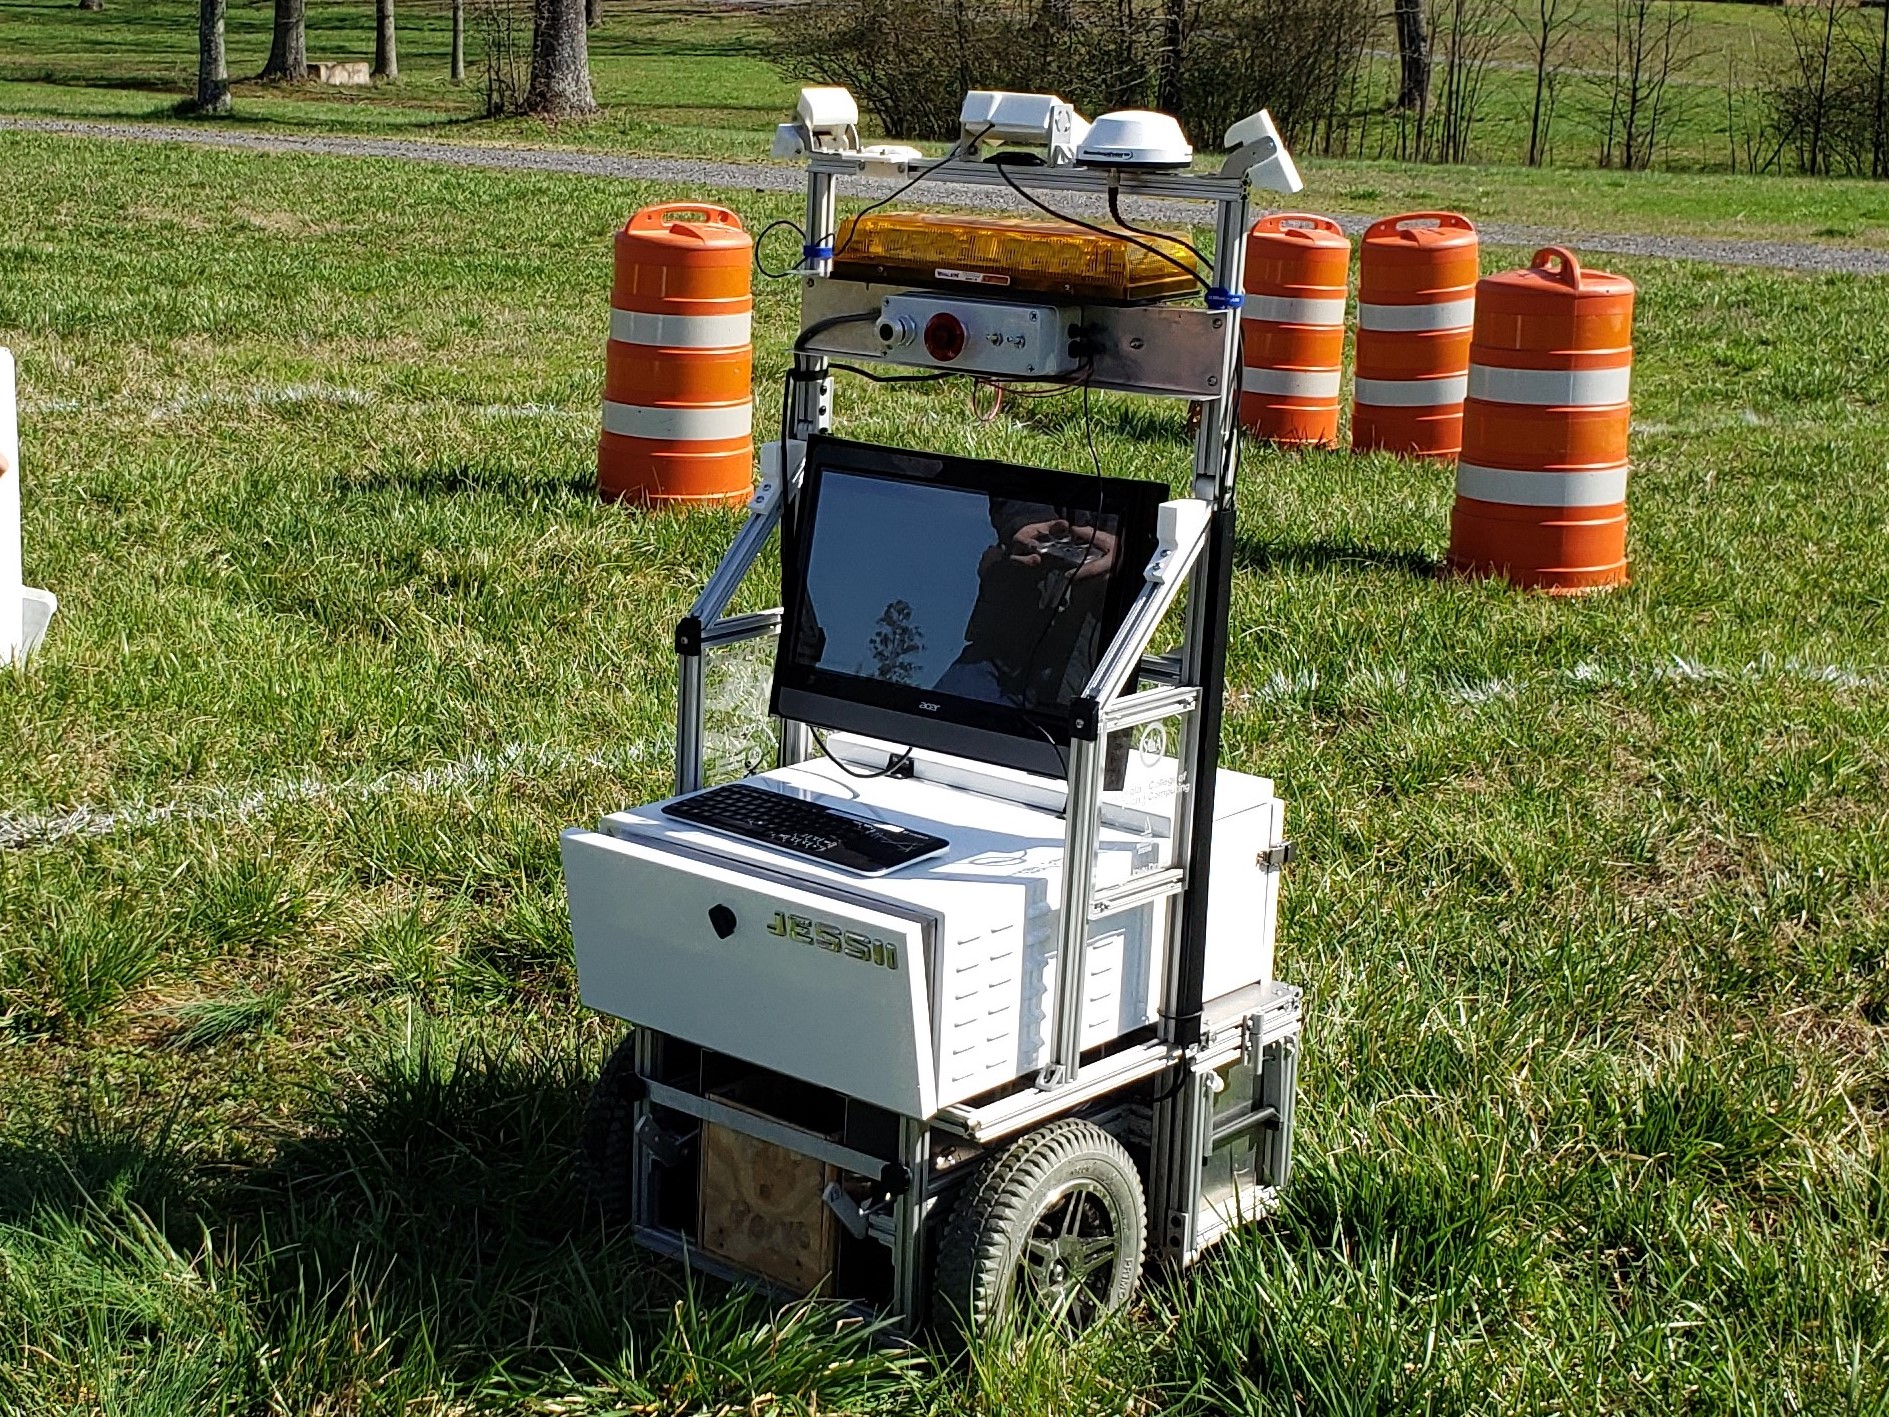 Autonomous Navigation for Mobile Robots in Open Terrain